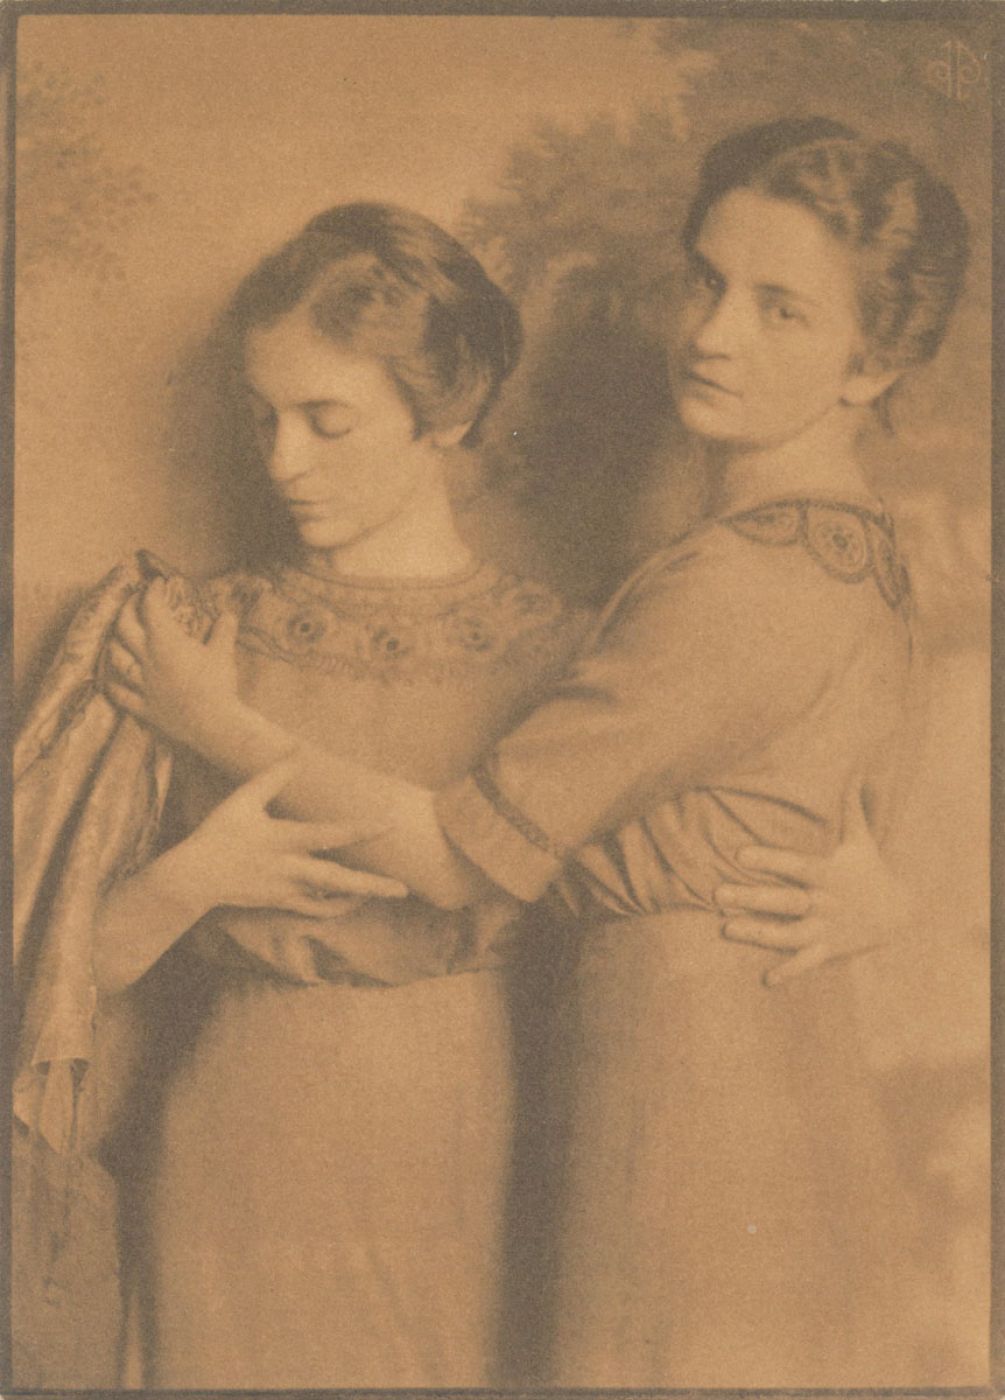 Székely Aladár, “Two women”, 1910 ca.